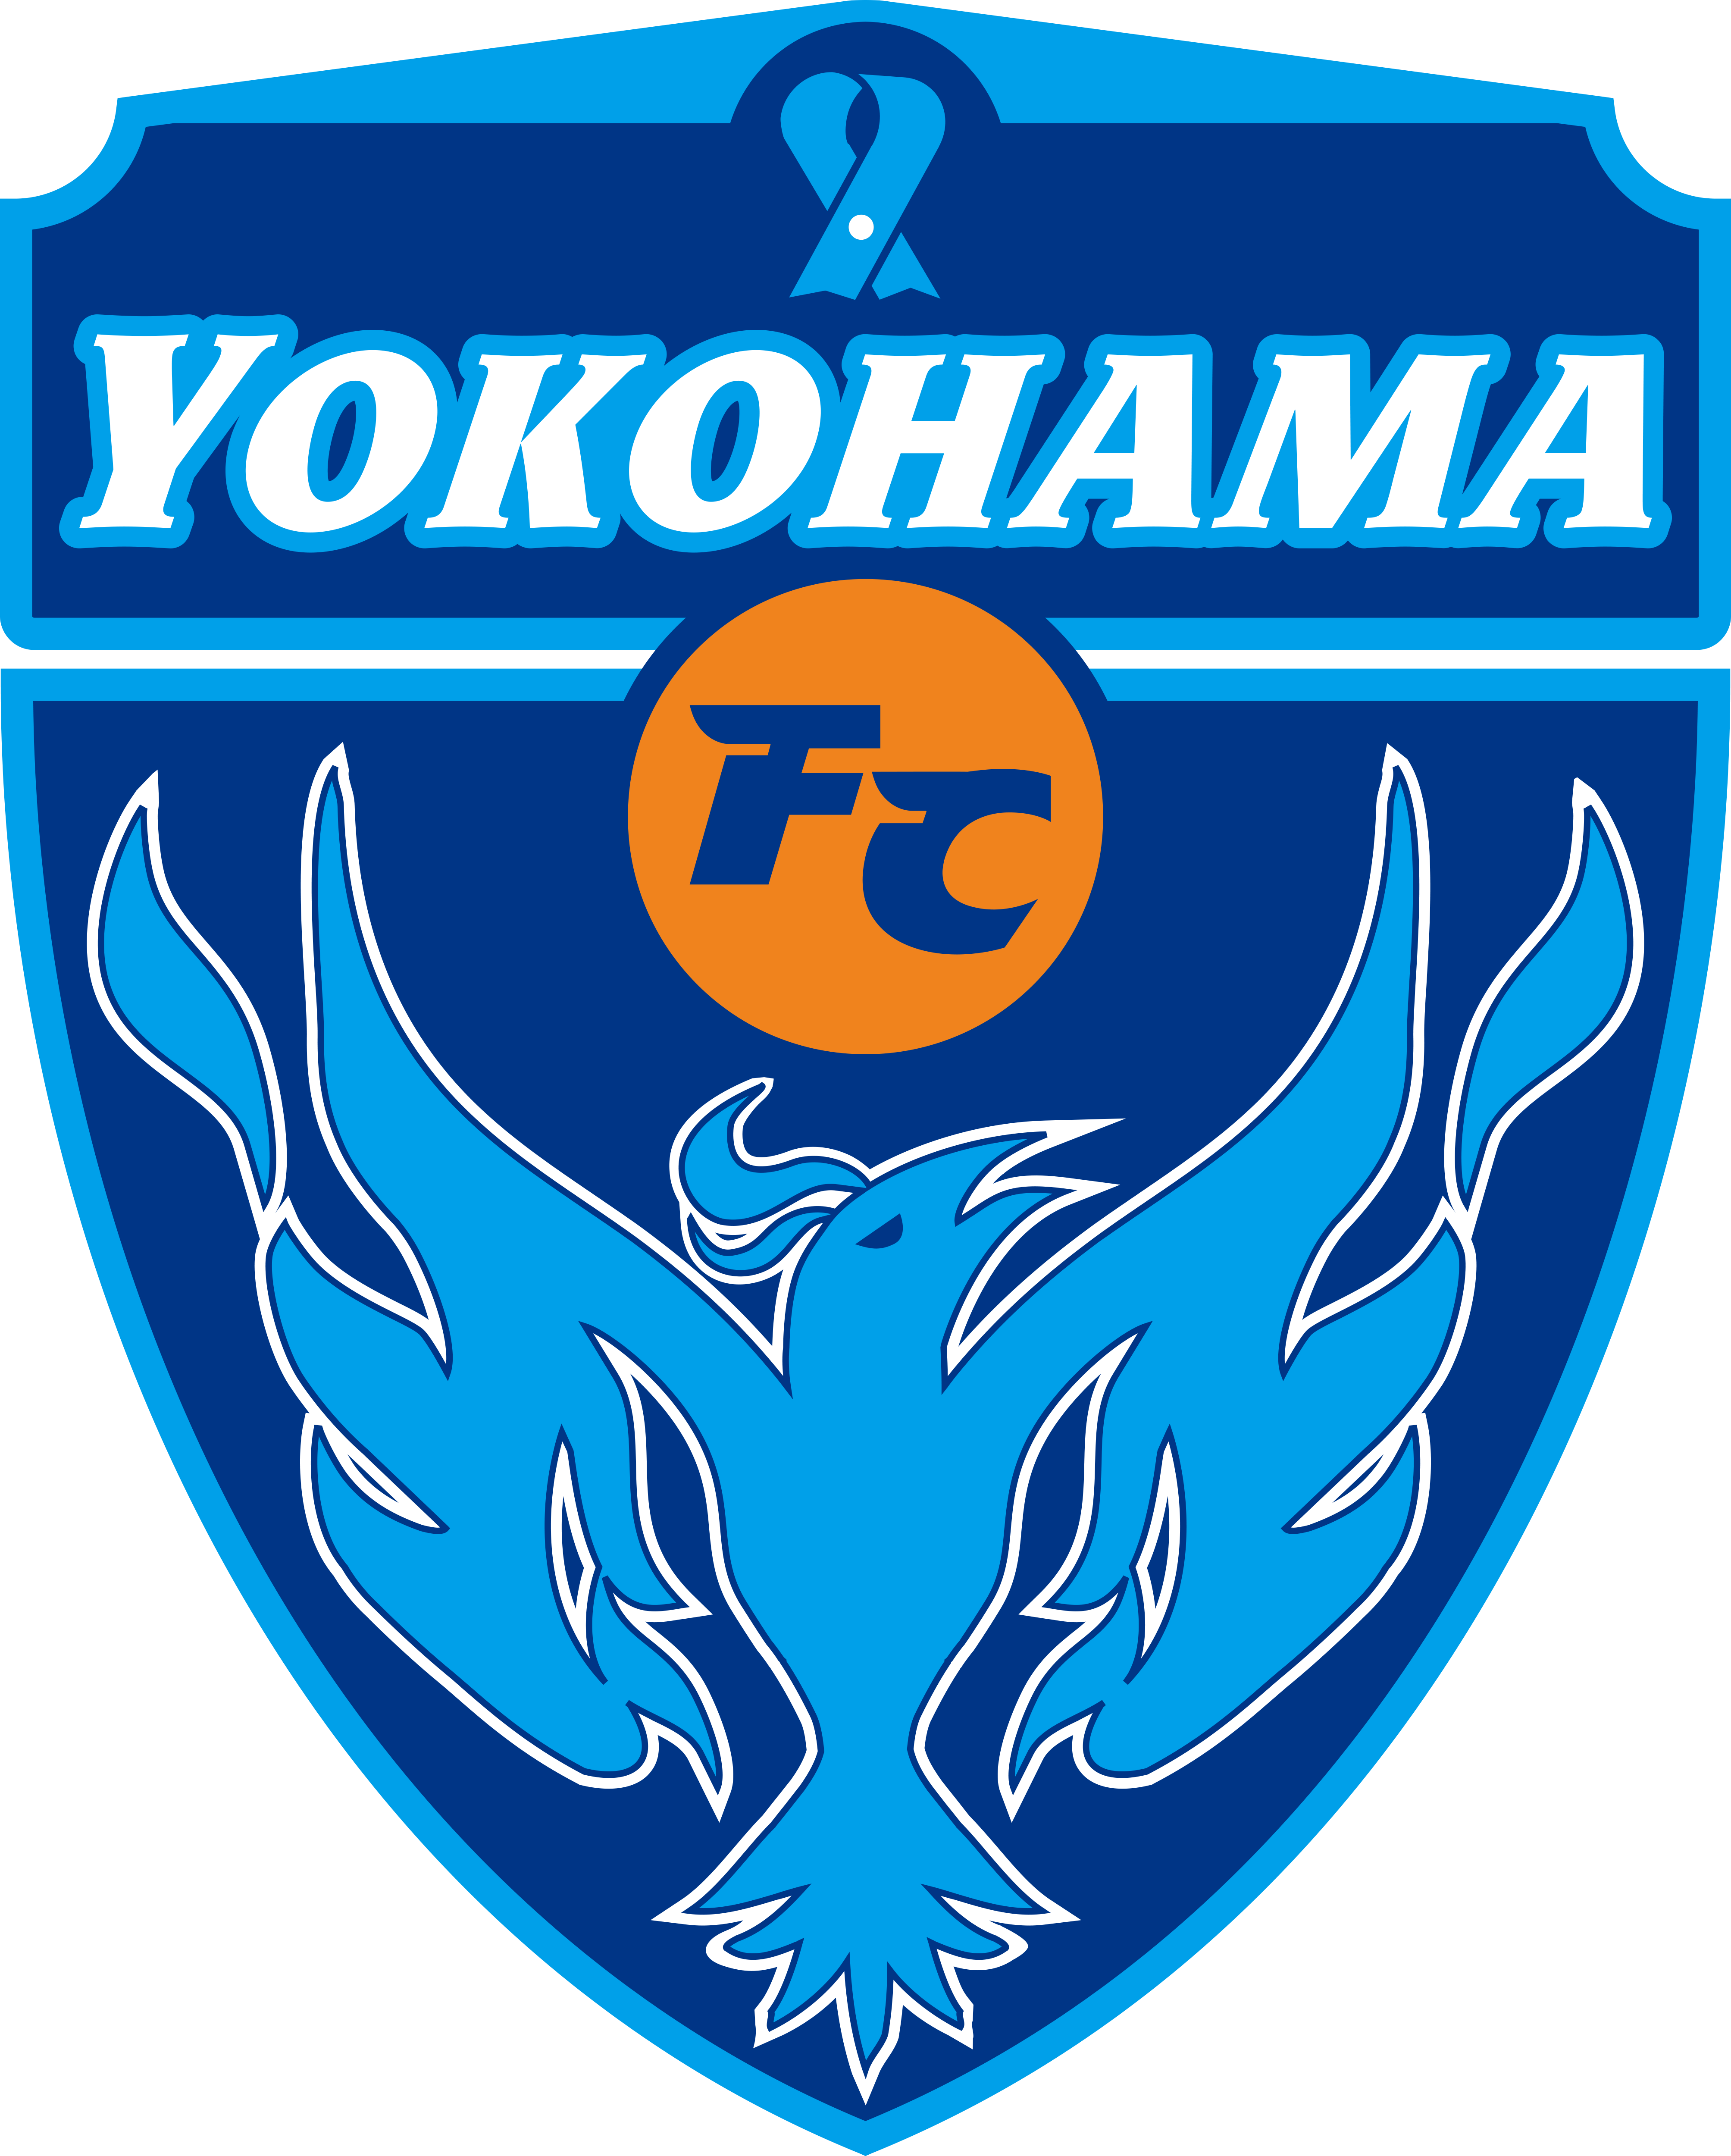 橫濱足球俱樂部(橫浜FC)